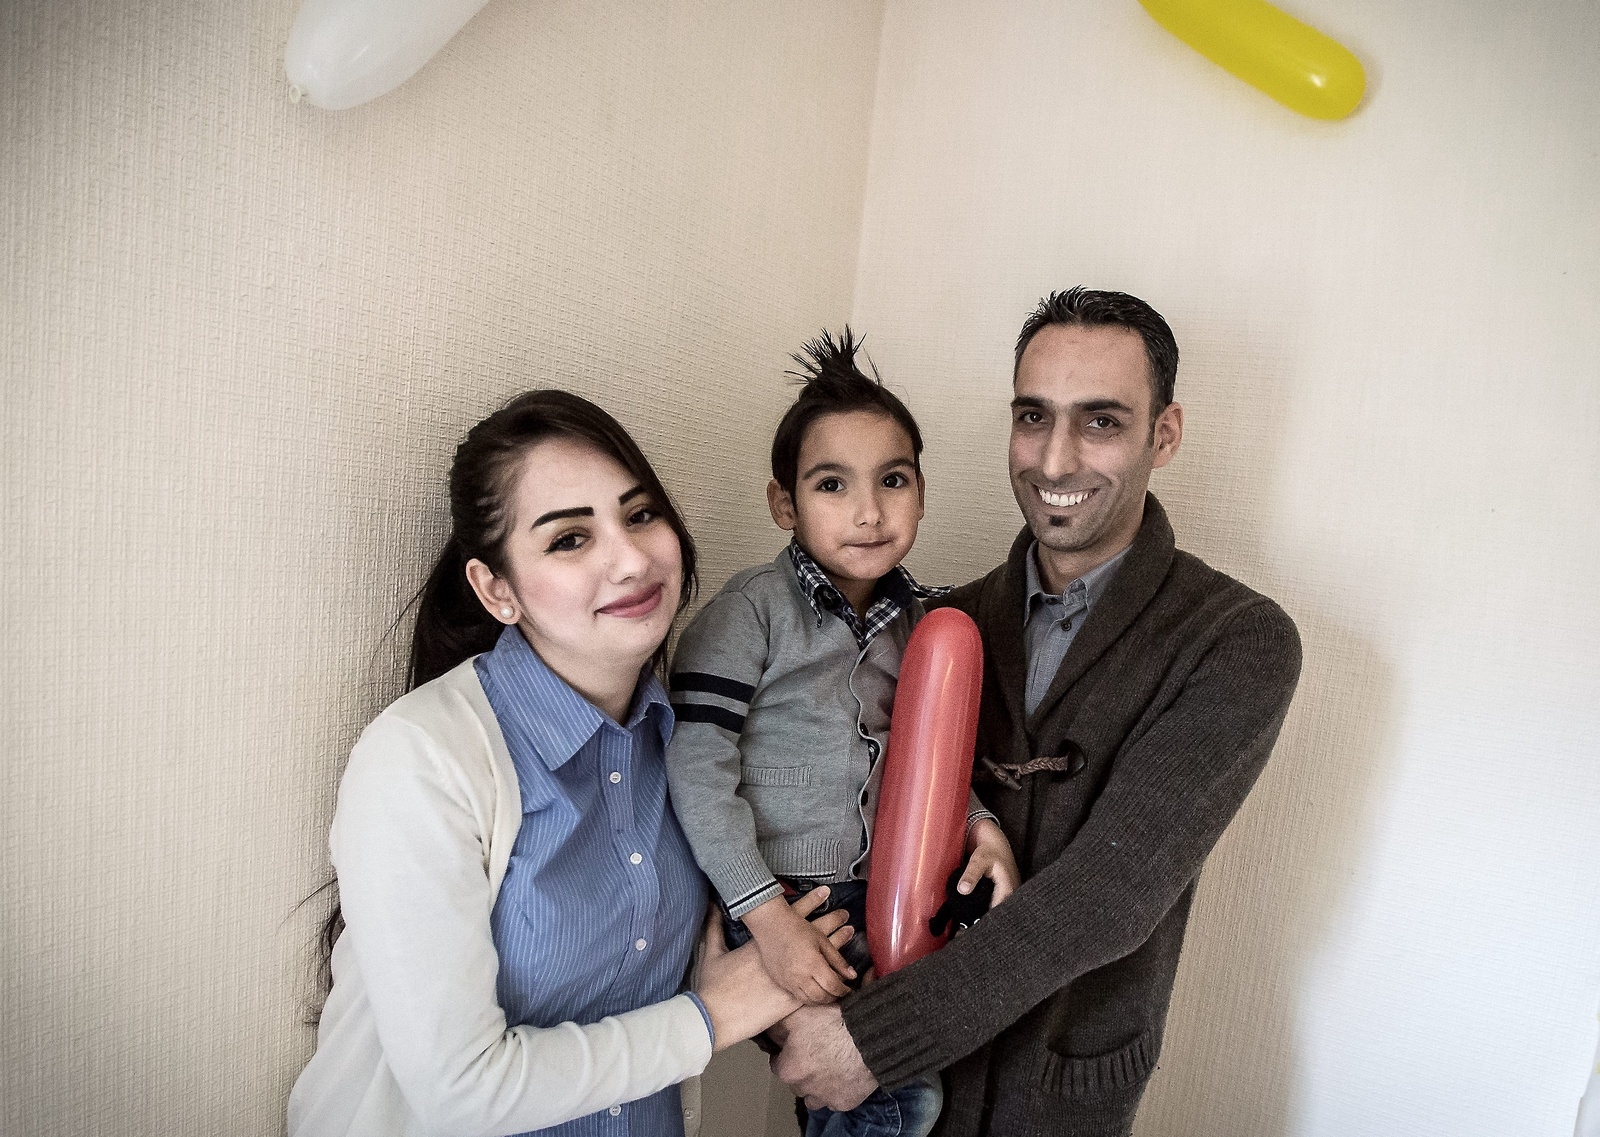 Fatima Turkmany, 24 år, och Khaled Khattab, 36 år, med sonen Walid Khattab, 4 år.
8